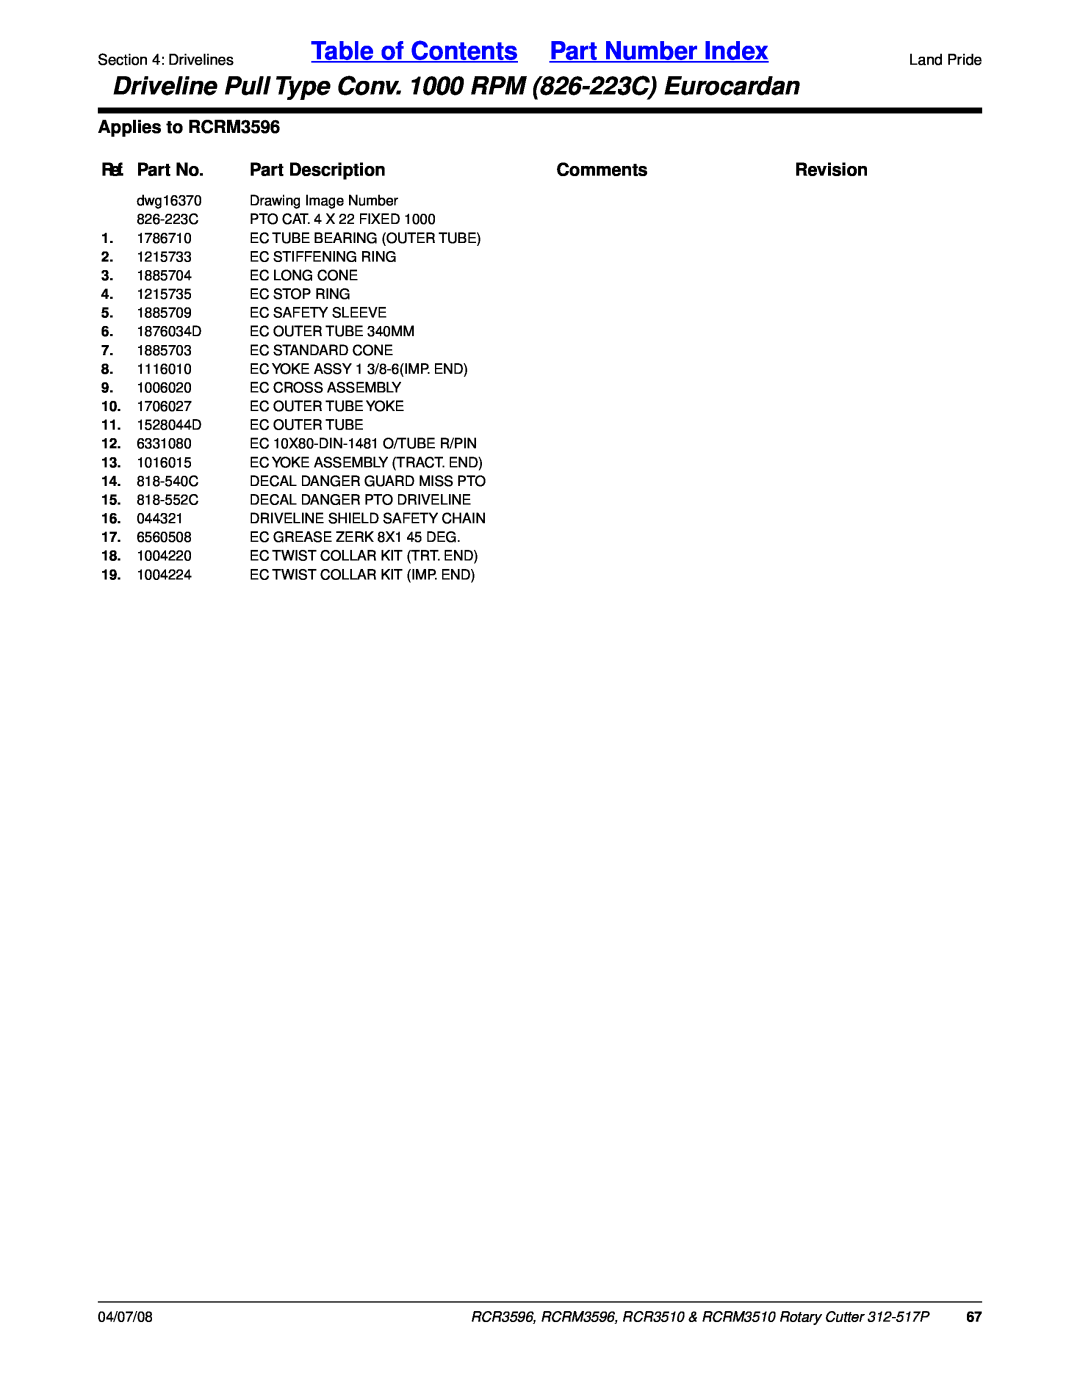 Land Pride RCR3596 Table of Contents Part Number Index, Applies to RCRM3596, Ref. Part No, Part Description, Comments 